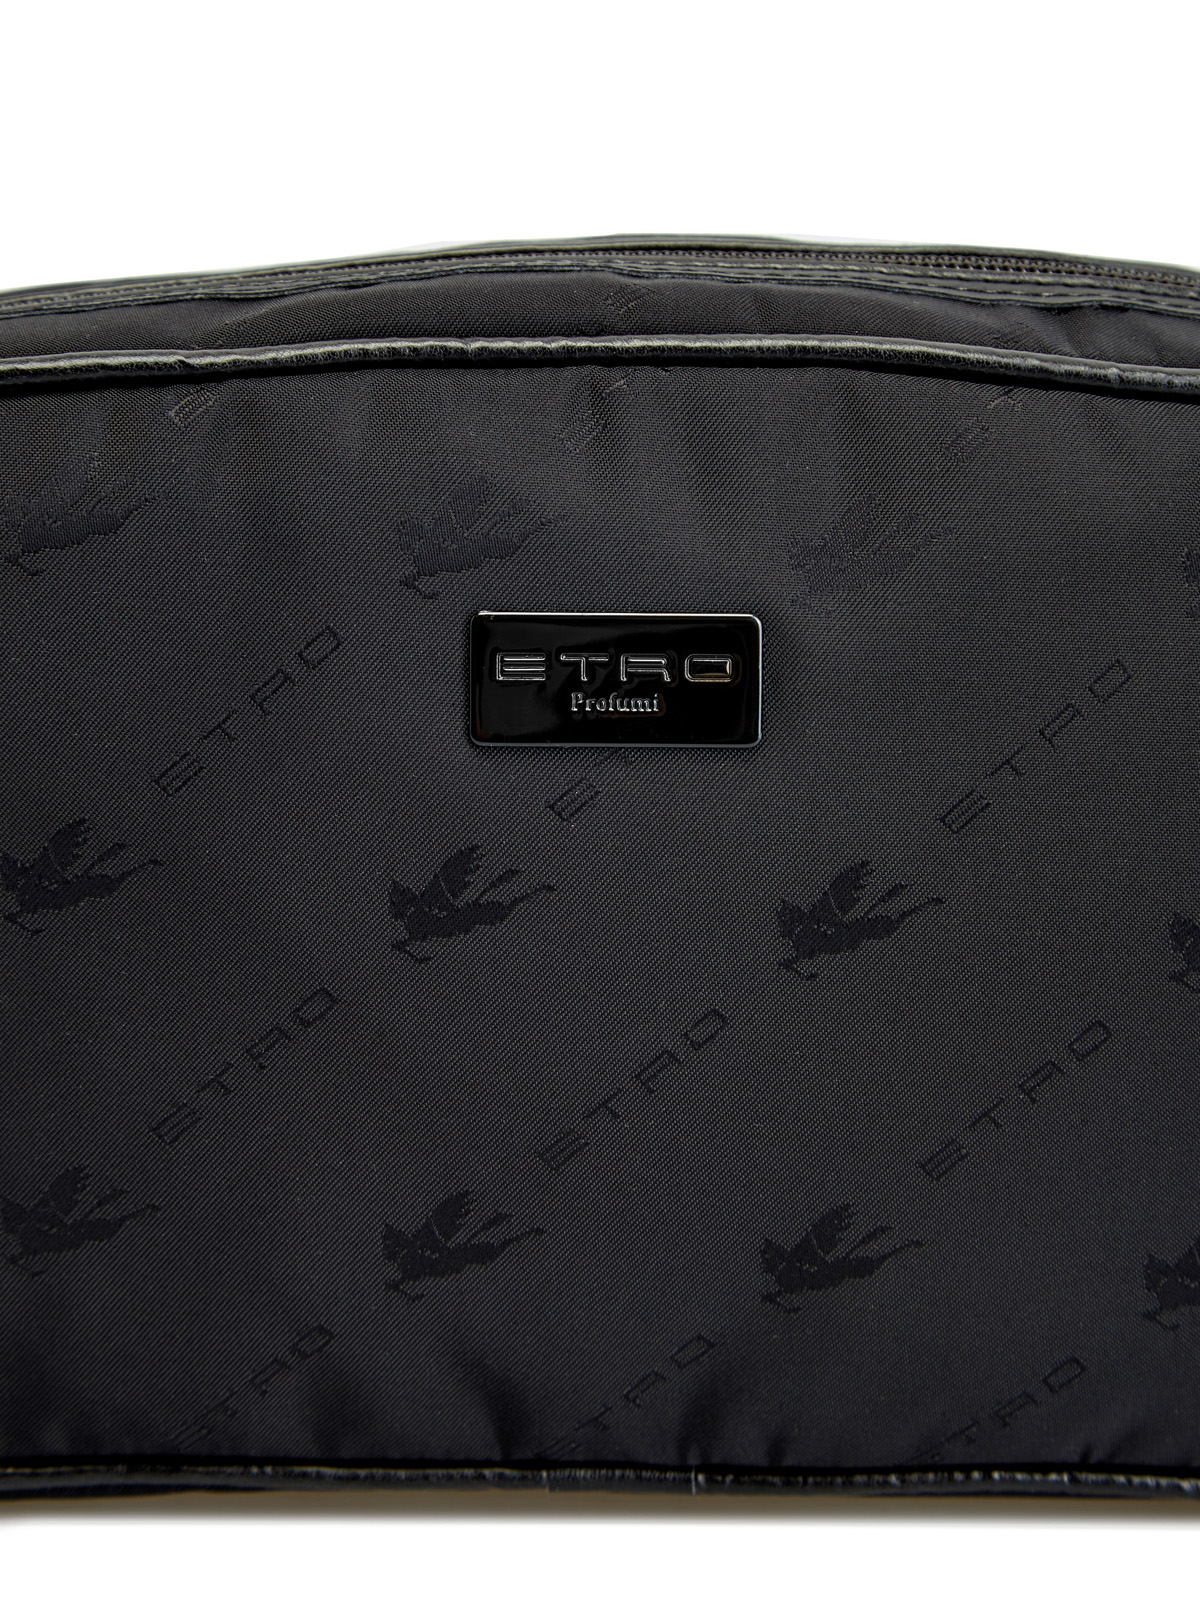 Компактный несессер из нейлона с фирменным декором ETRO, цвет черный, размер 37;40;41;38 - фото 5